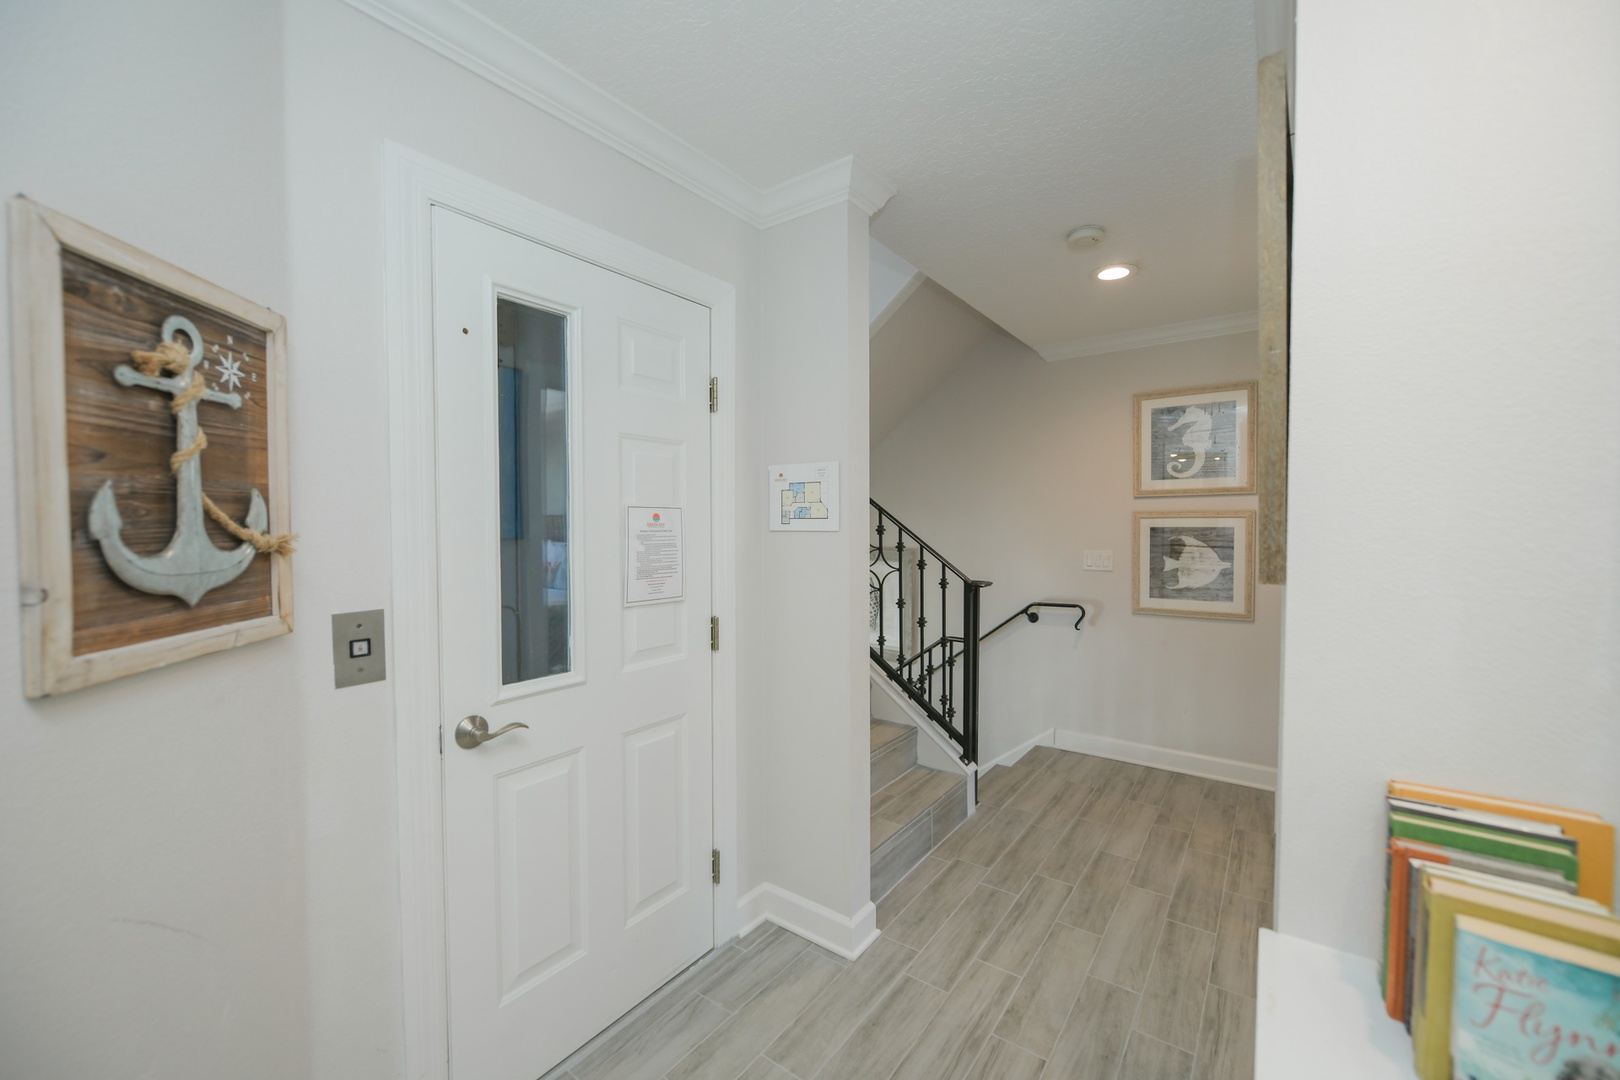 Elevator Door and Stairway to Bonus Room and Rooftop Deck